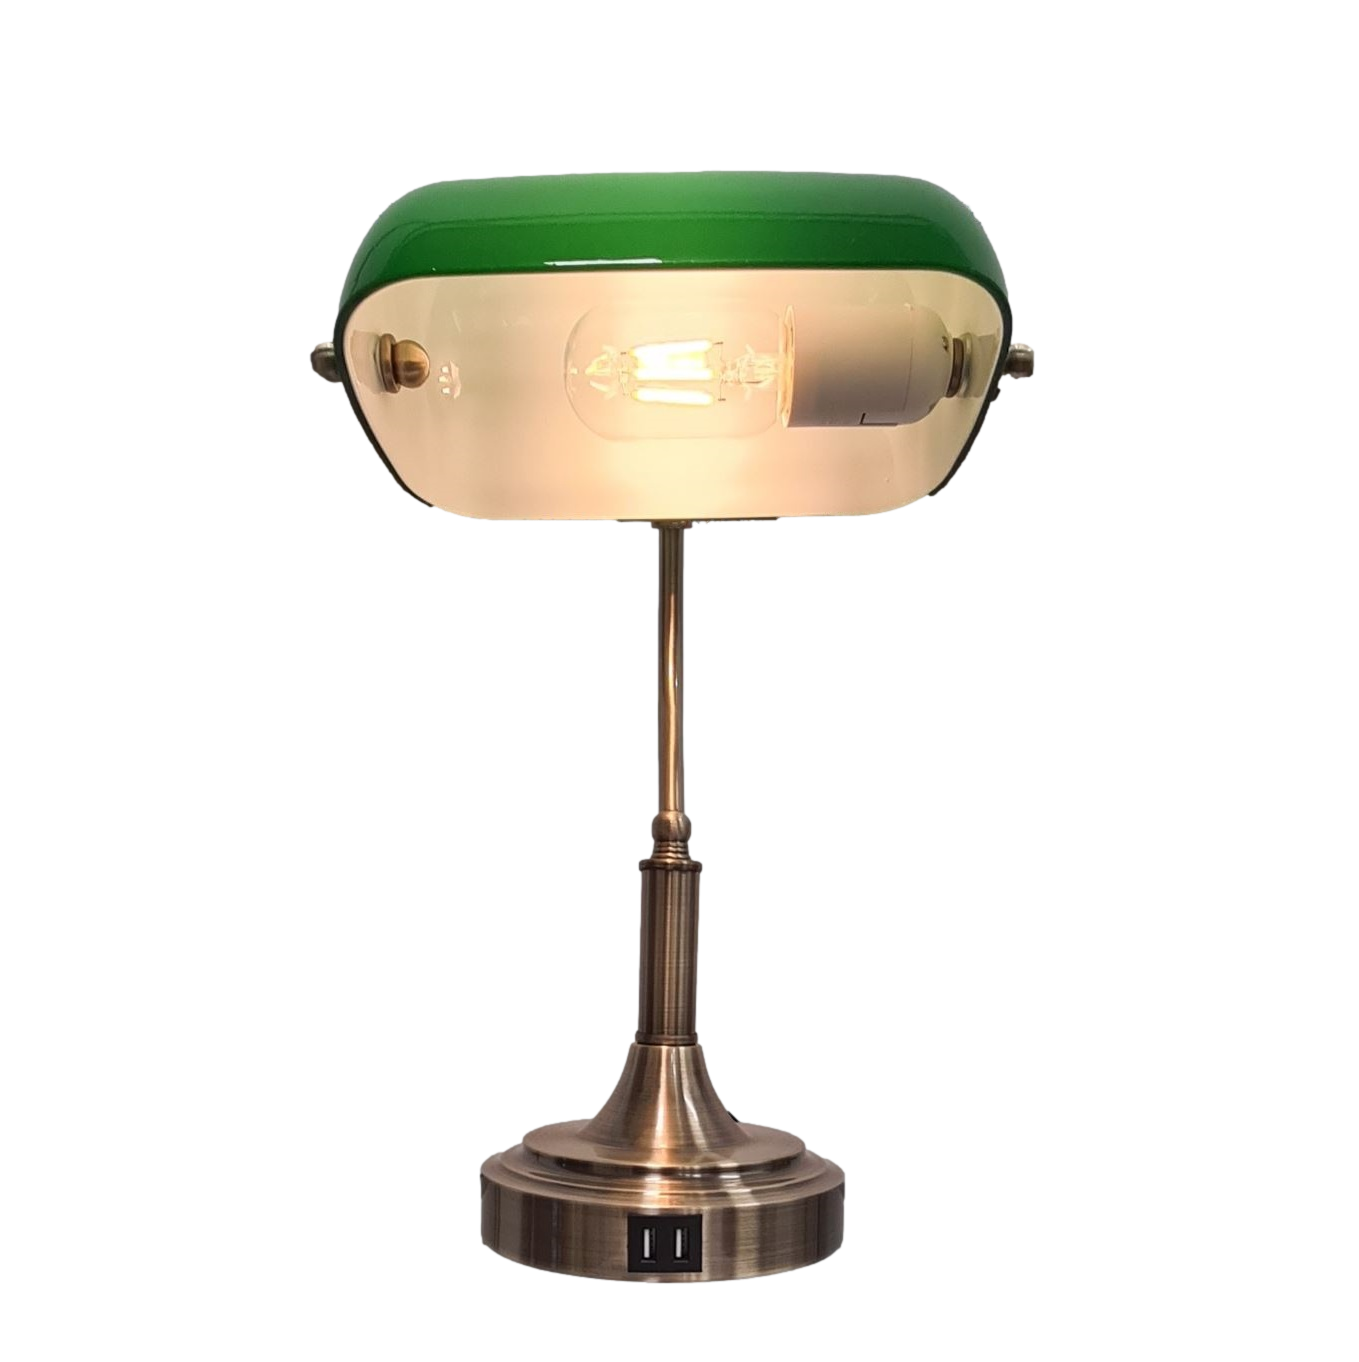 groep Levering Beoordeling Notarislamp - Groene Bureaulamp inclusief Lamp - Touchdimmer - USB  aansluiting - Bankierslamp met E27 fitting - LedlampshopXL